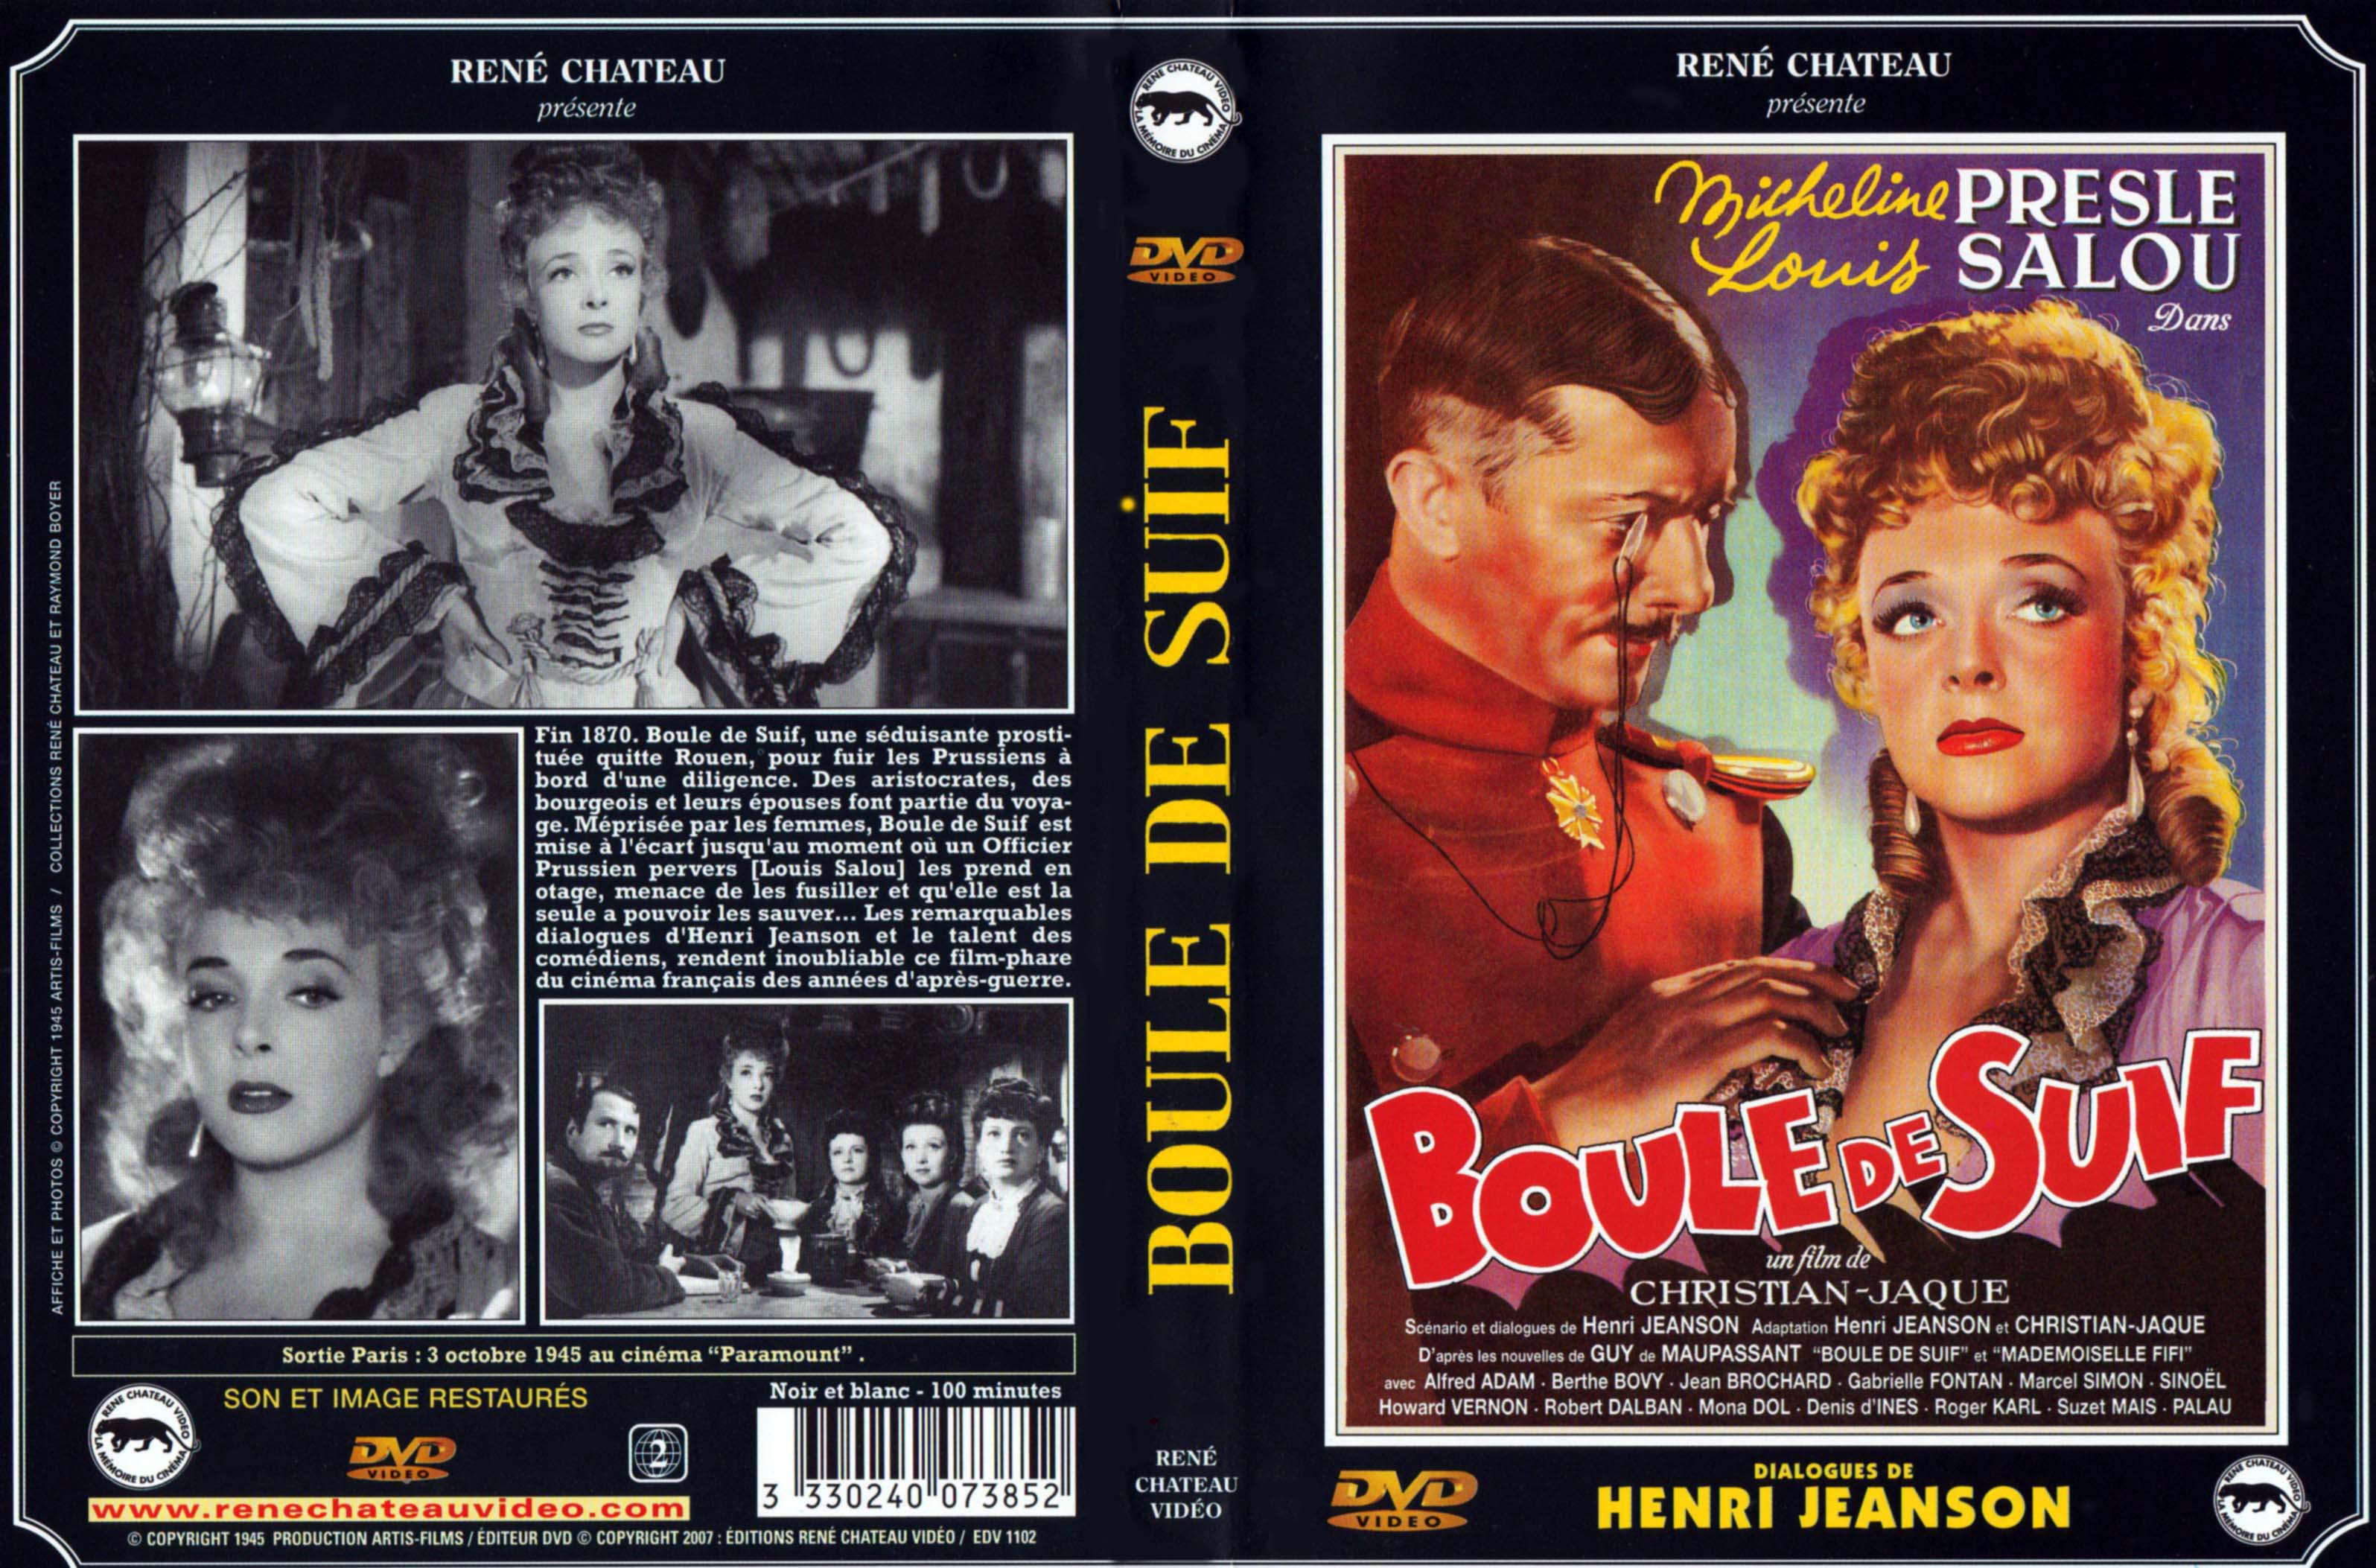 Jaquette DVD Boule de Suif